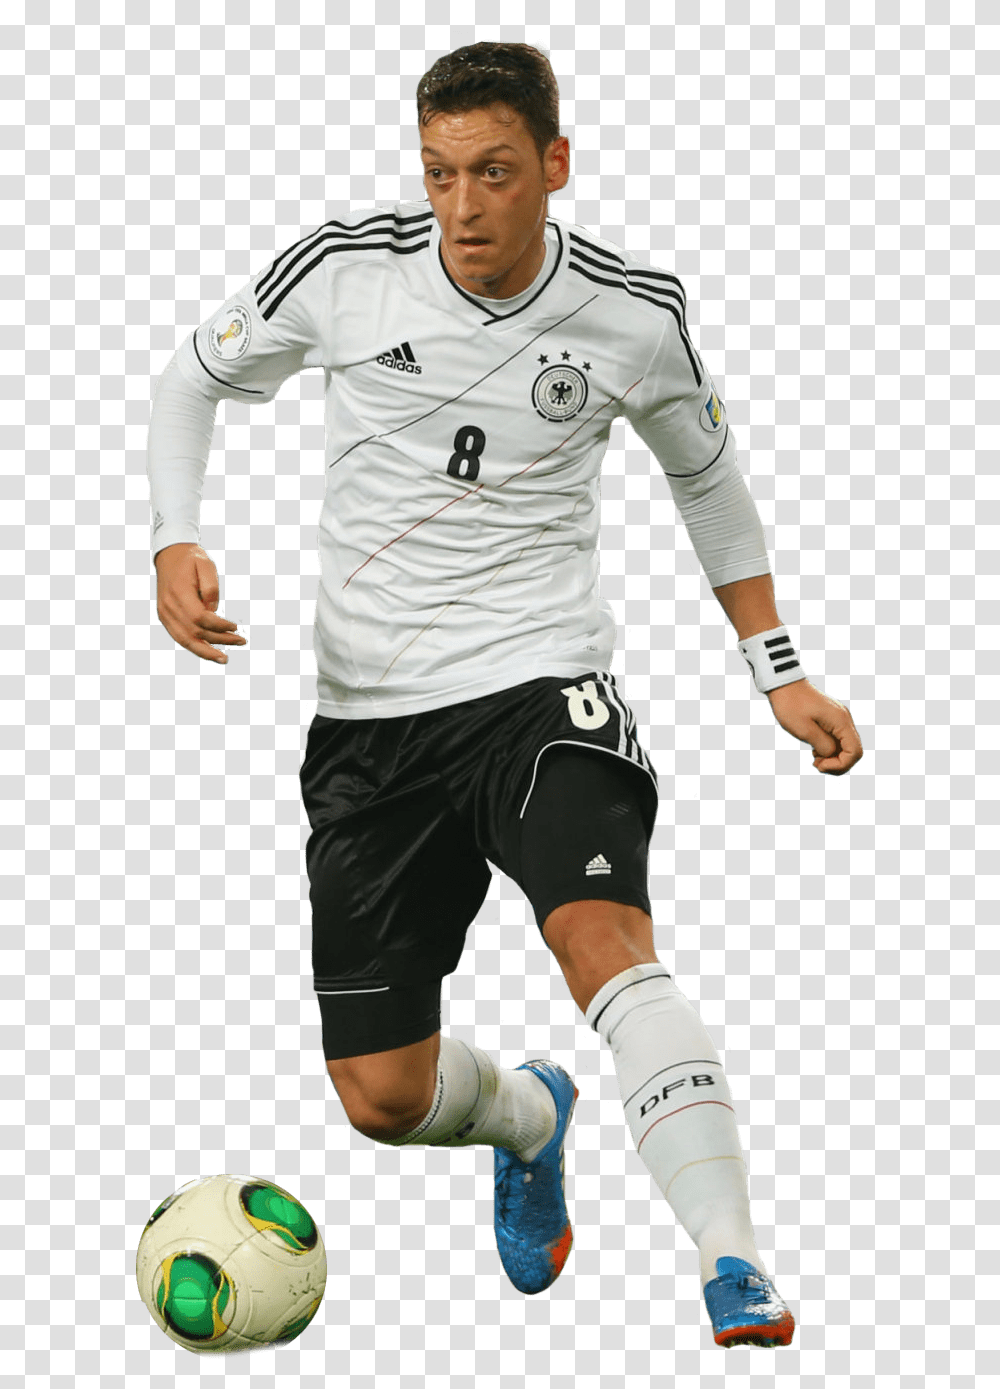 Mesut Ozil Fast Dribble Mesut Ozil, Shorts, Soccer Ball, Football Transparent Png